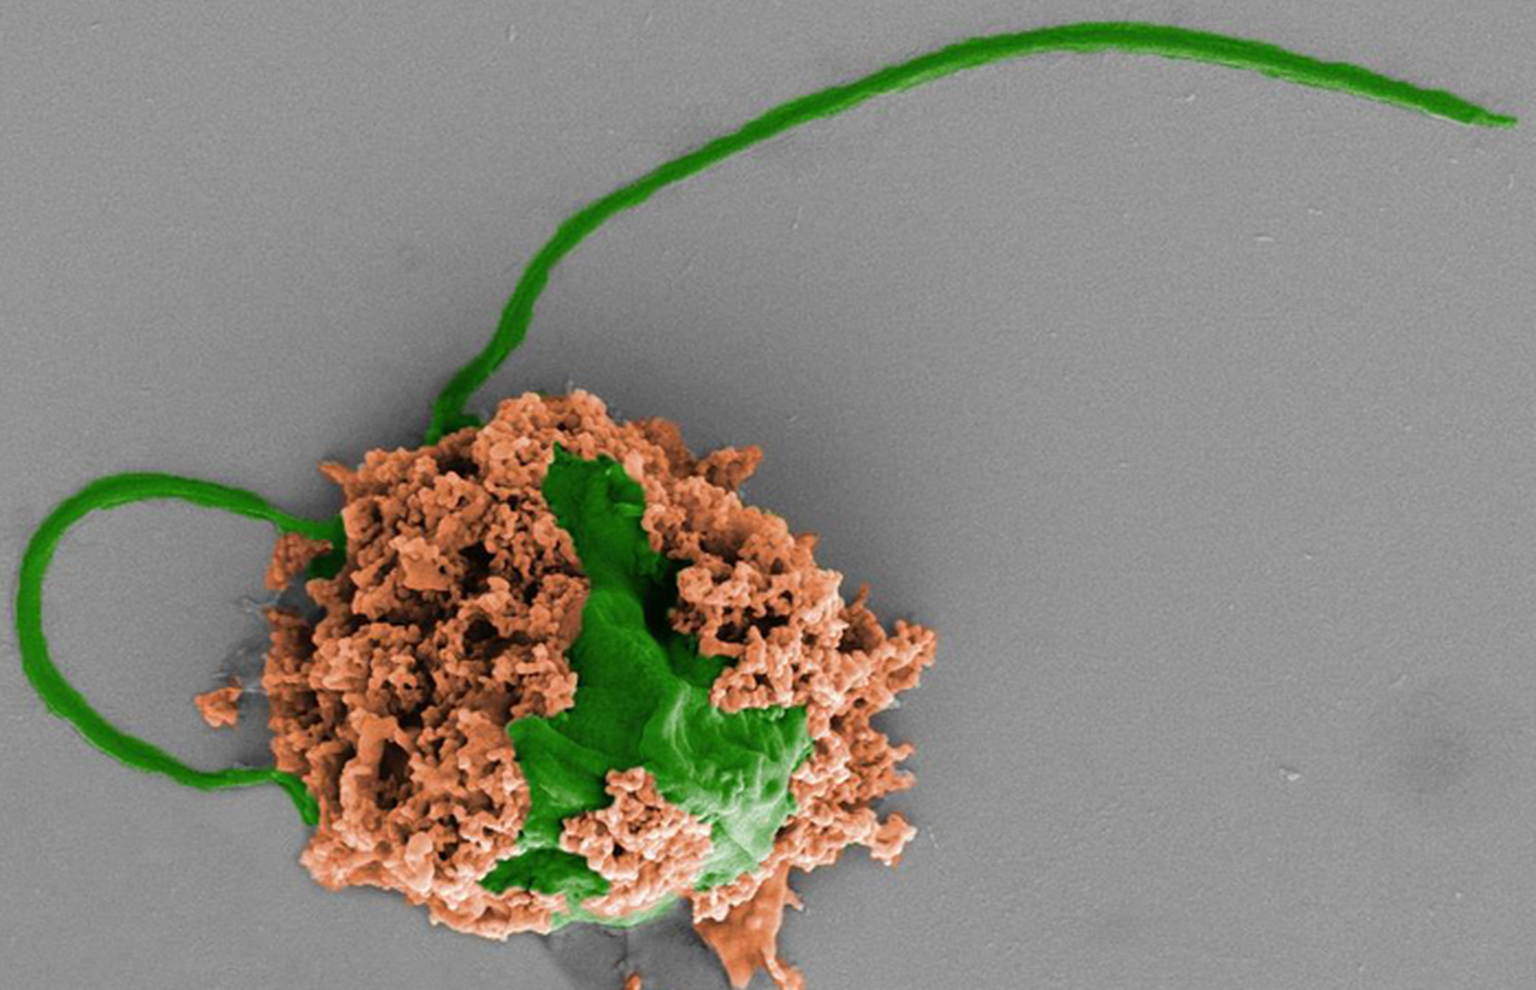 Kopsupõletiku vastu võitlev mikrorobot on valmistatud vetikarakust (roheline), mis on kaetud biolagunevatest polümeeridest nanoosakestega (pruun). Nanoosakesed sisaldavad antibiootikume ja on kaetud neutrofiilide rakumembraanidega.